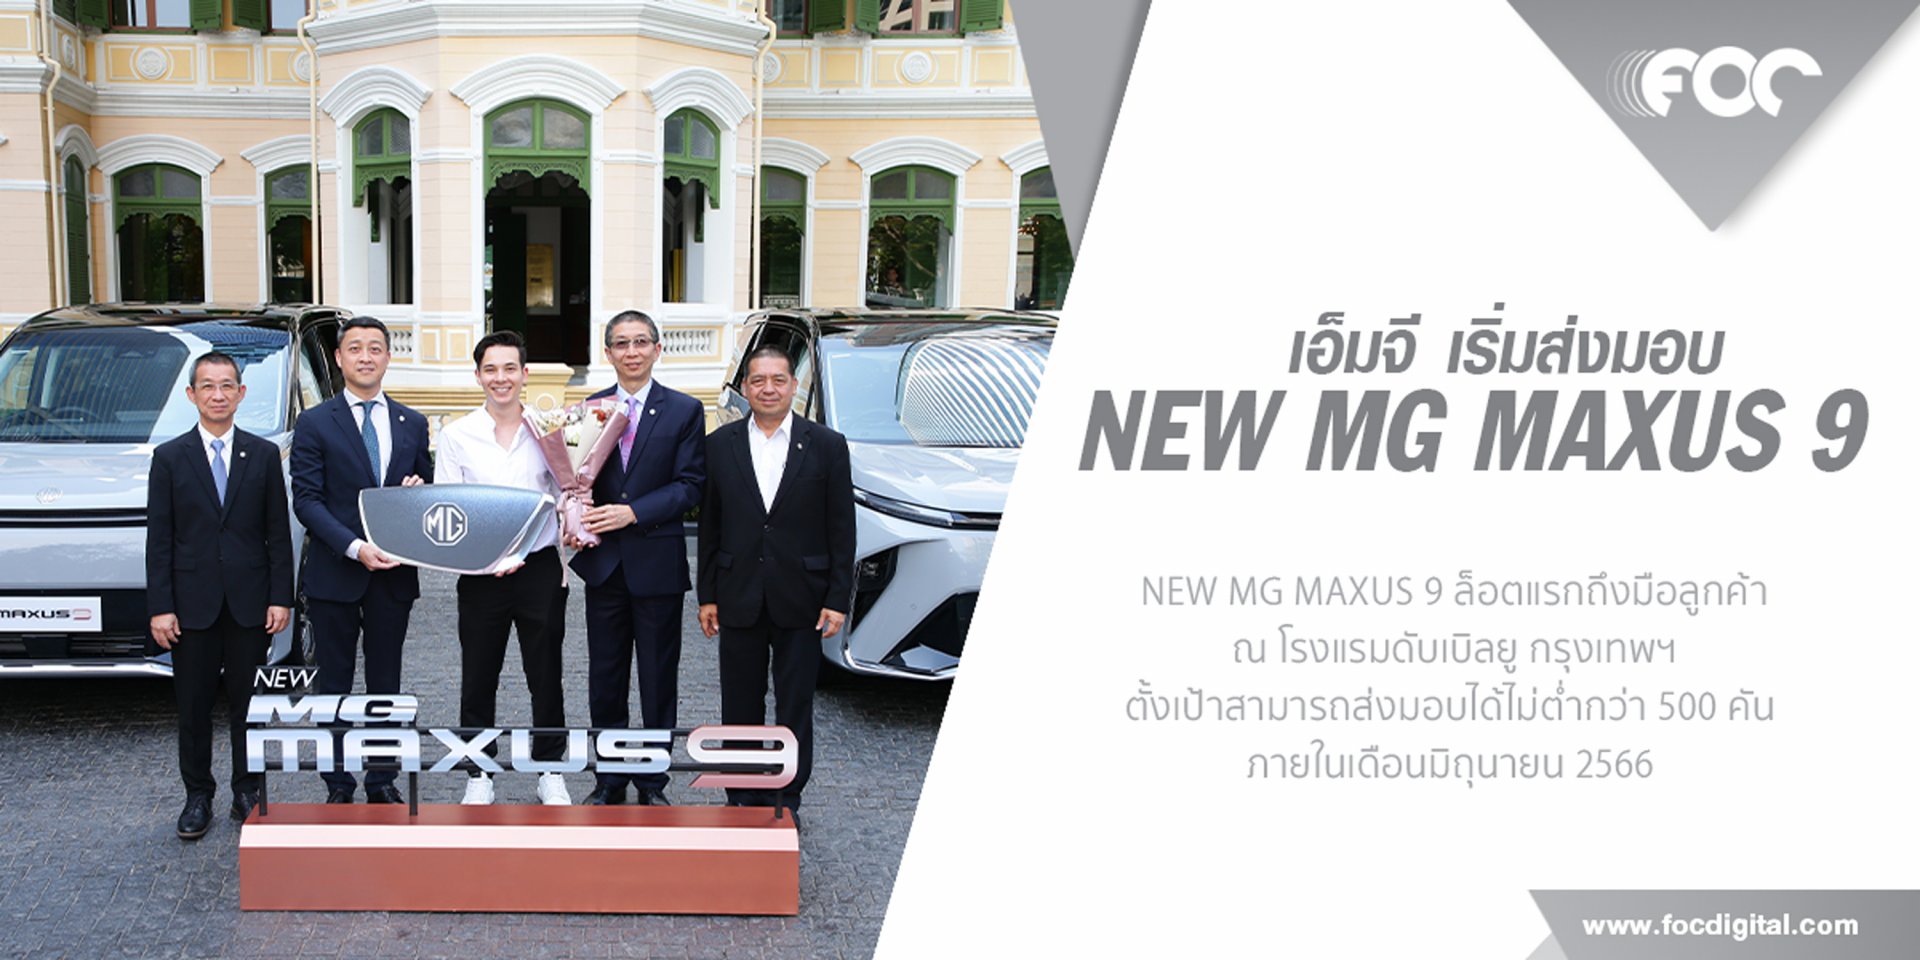 เอ็มจี ส่งมอบ NEW MG MAXUS 9 ล็อตแรก 